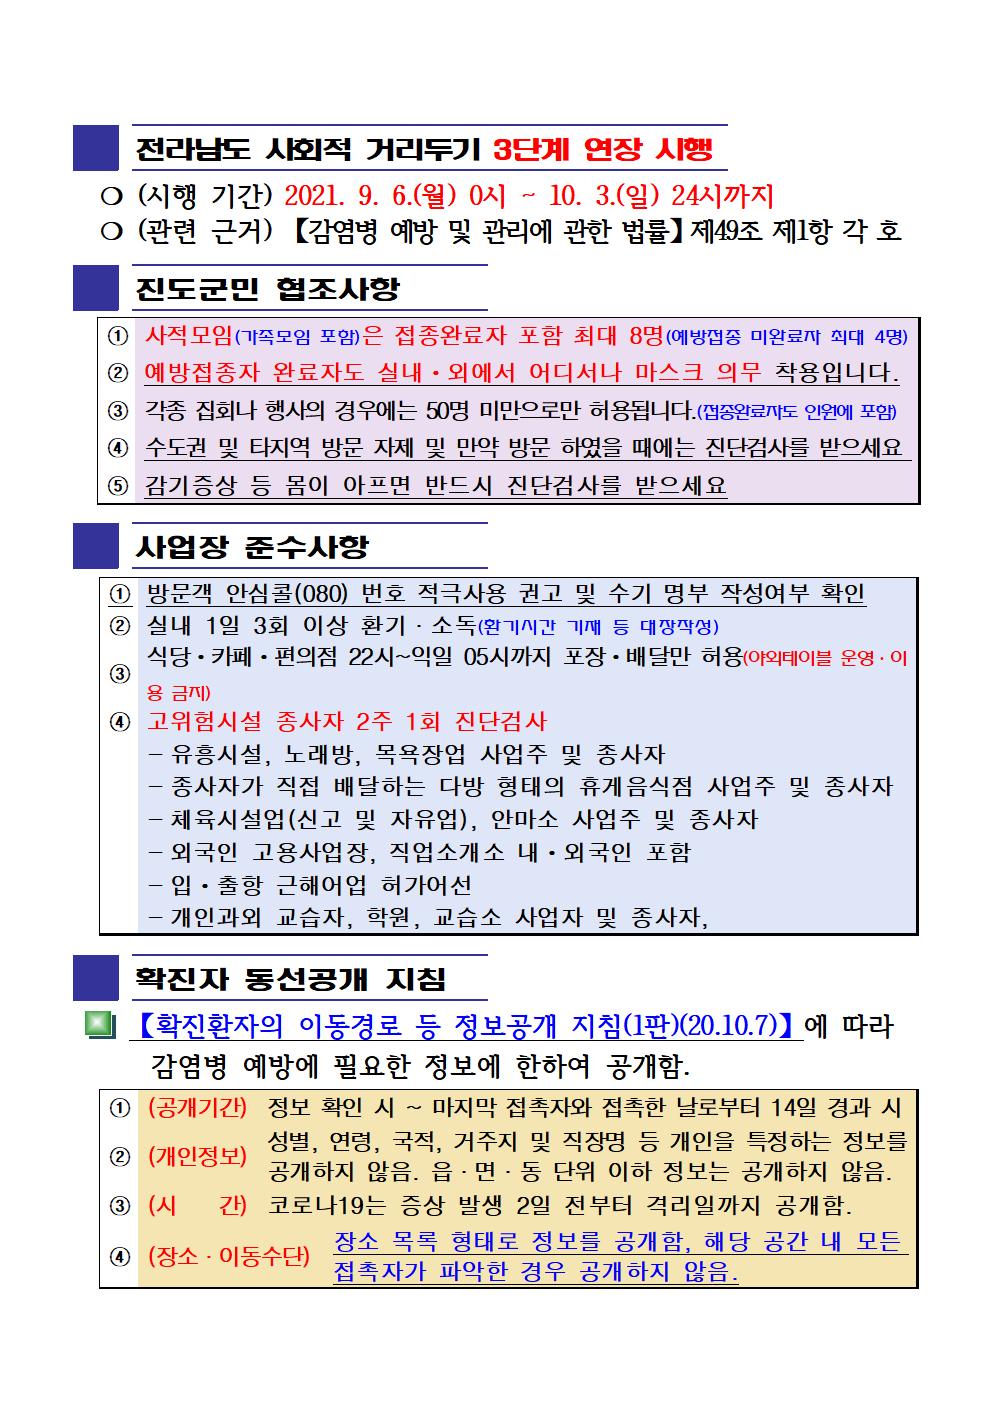 2021년 코로나 19 대응 일일상황보고(9월 28일 24시 기준) 첨부#2